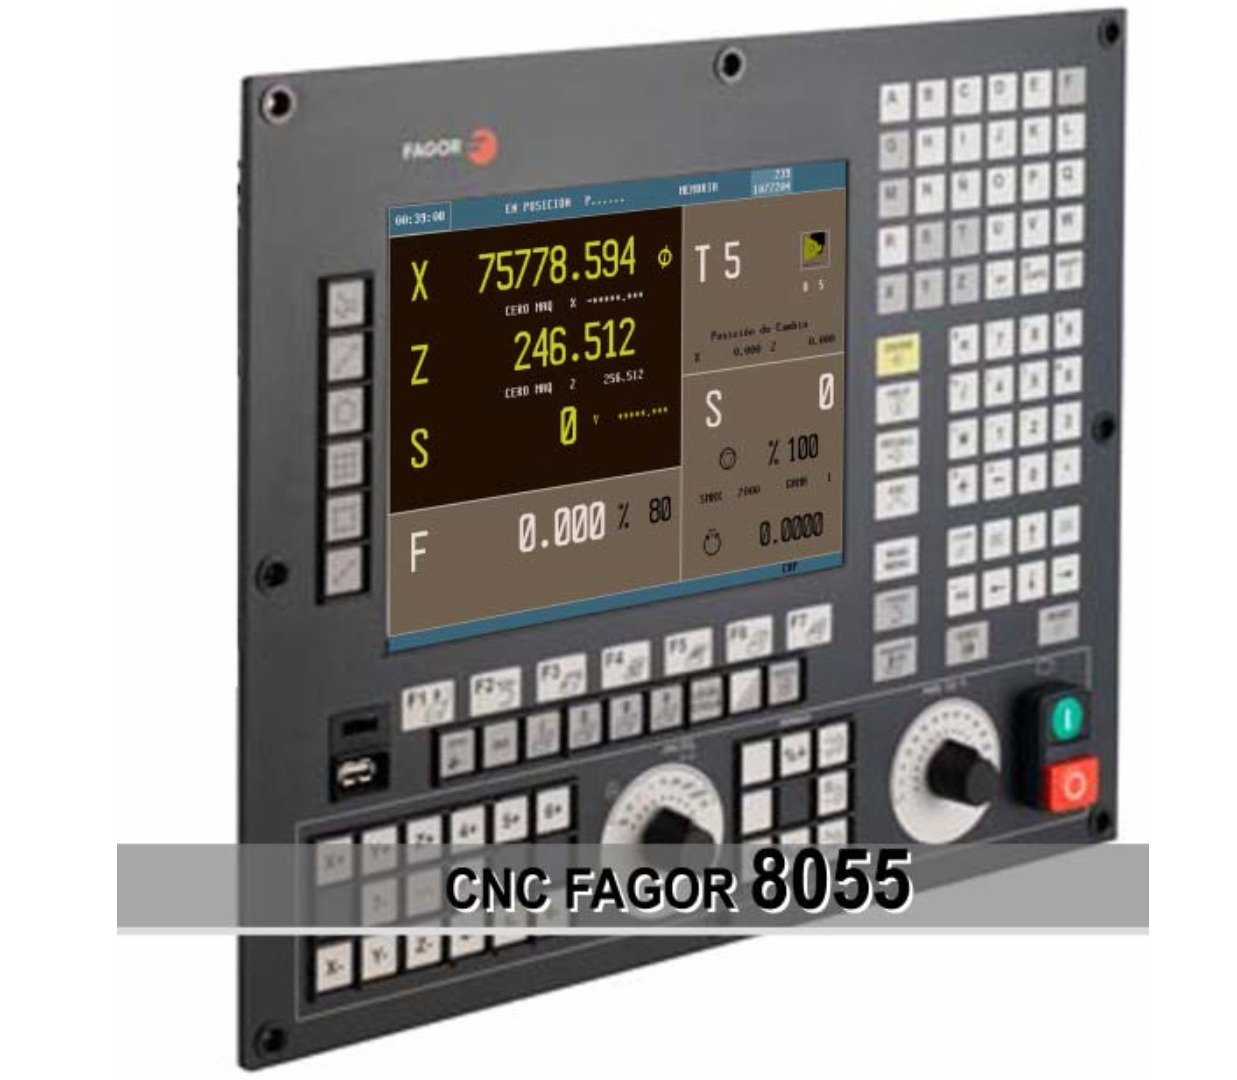 ✅ Mastercam Post Processor for FAGOR 8055 CNC \